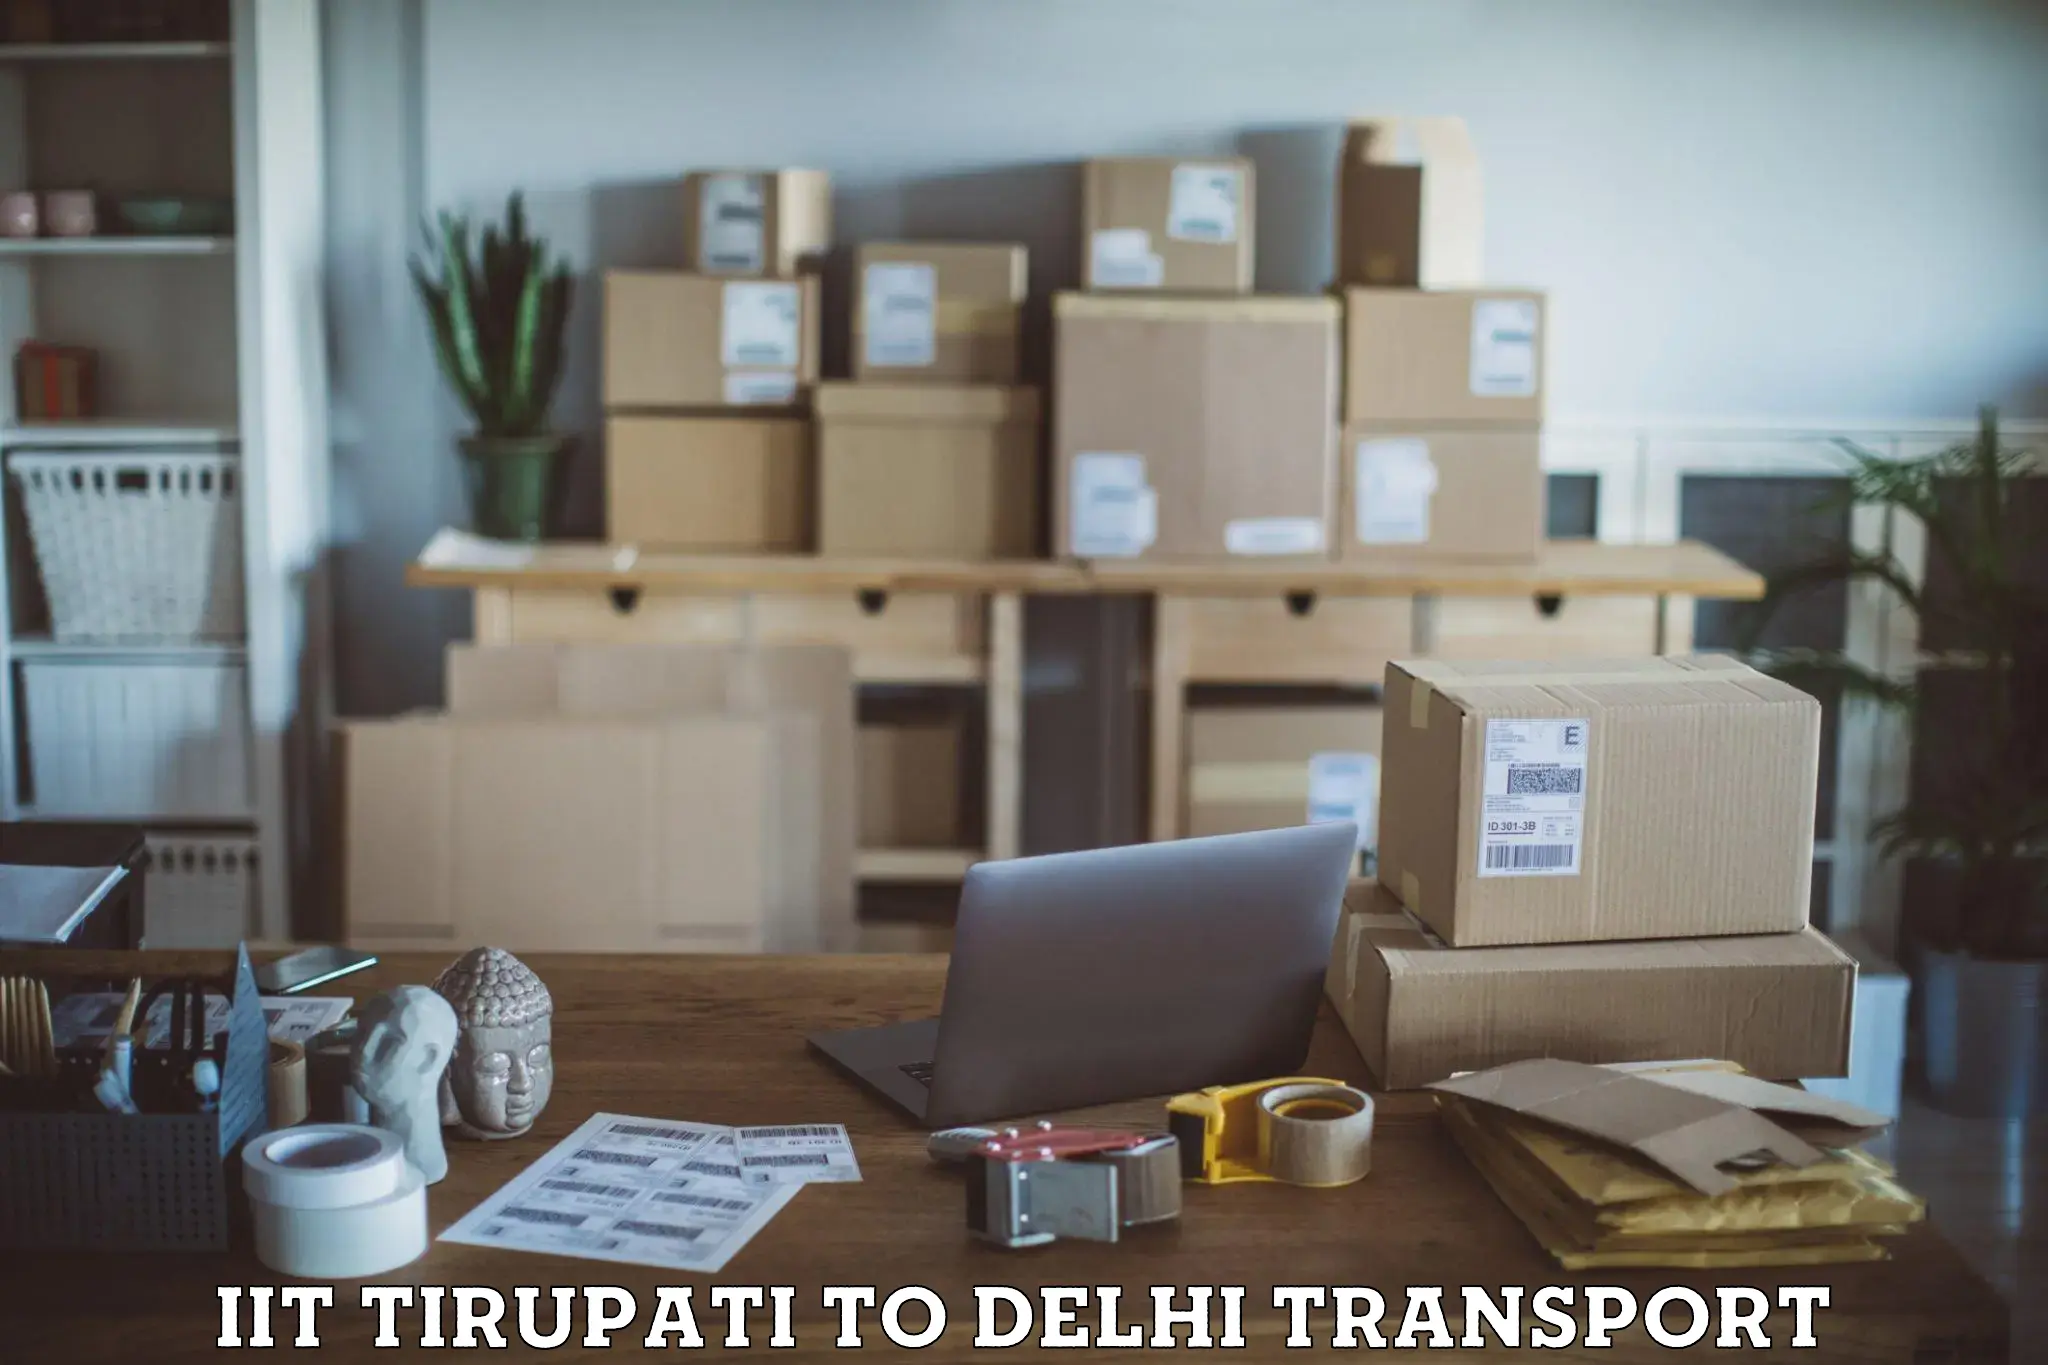 Parcel transport services IIT Tirupati to NCR